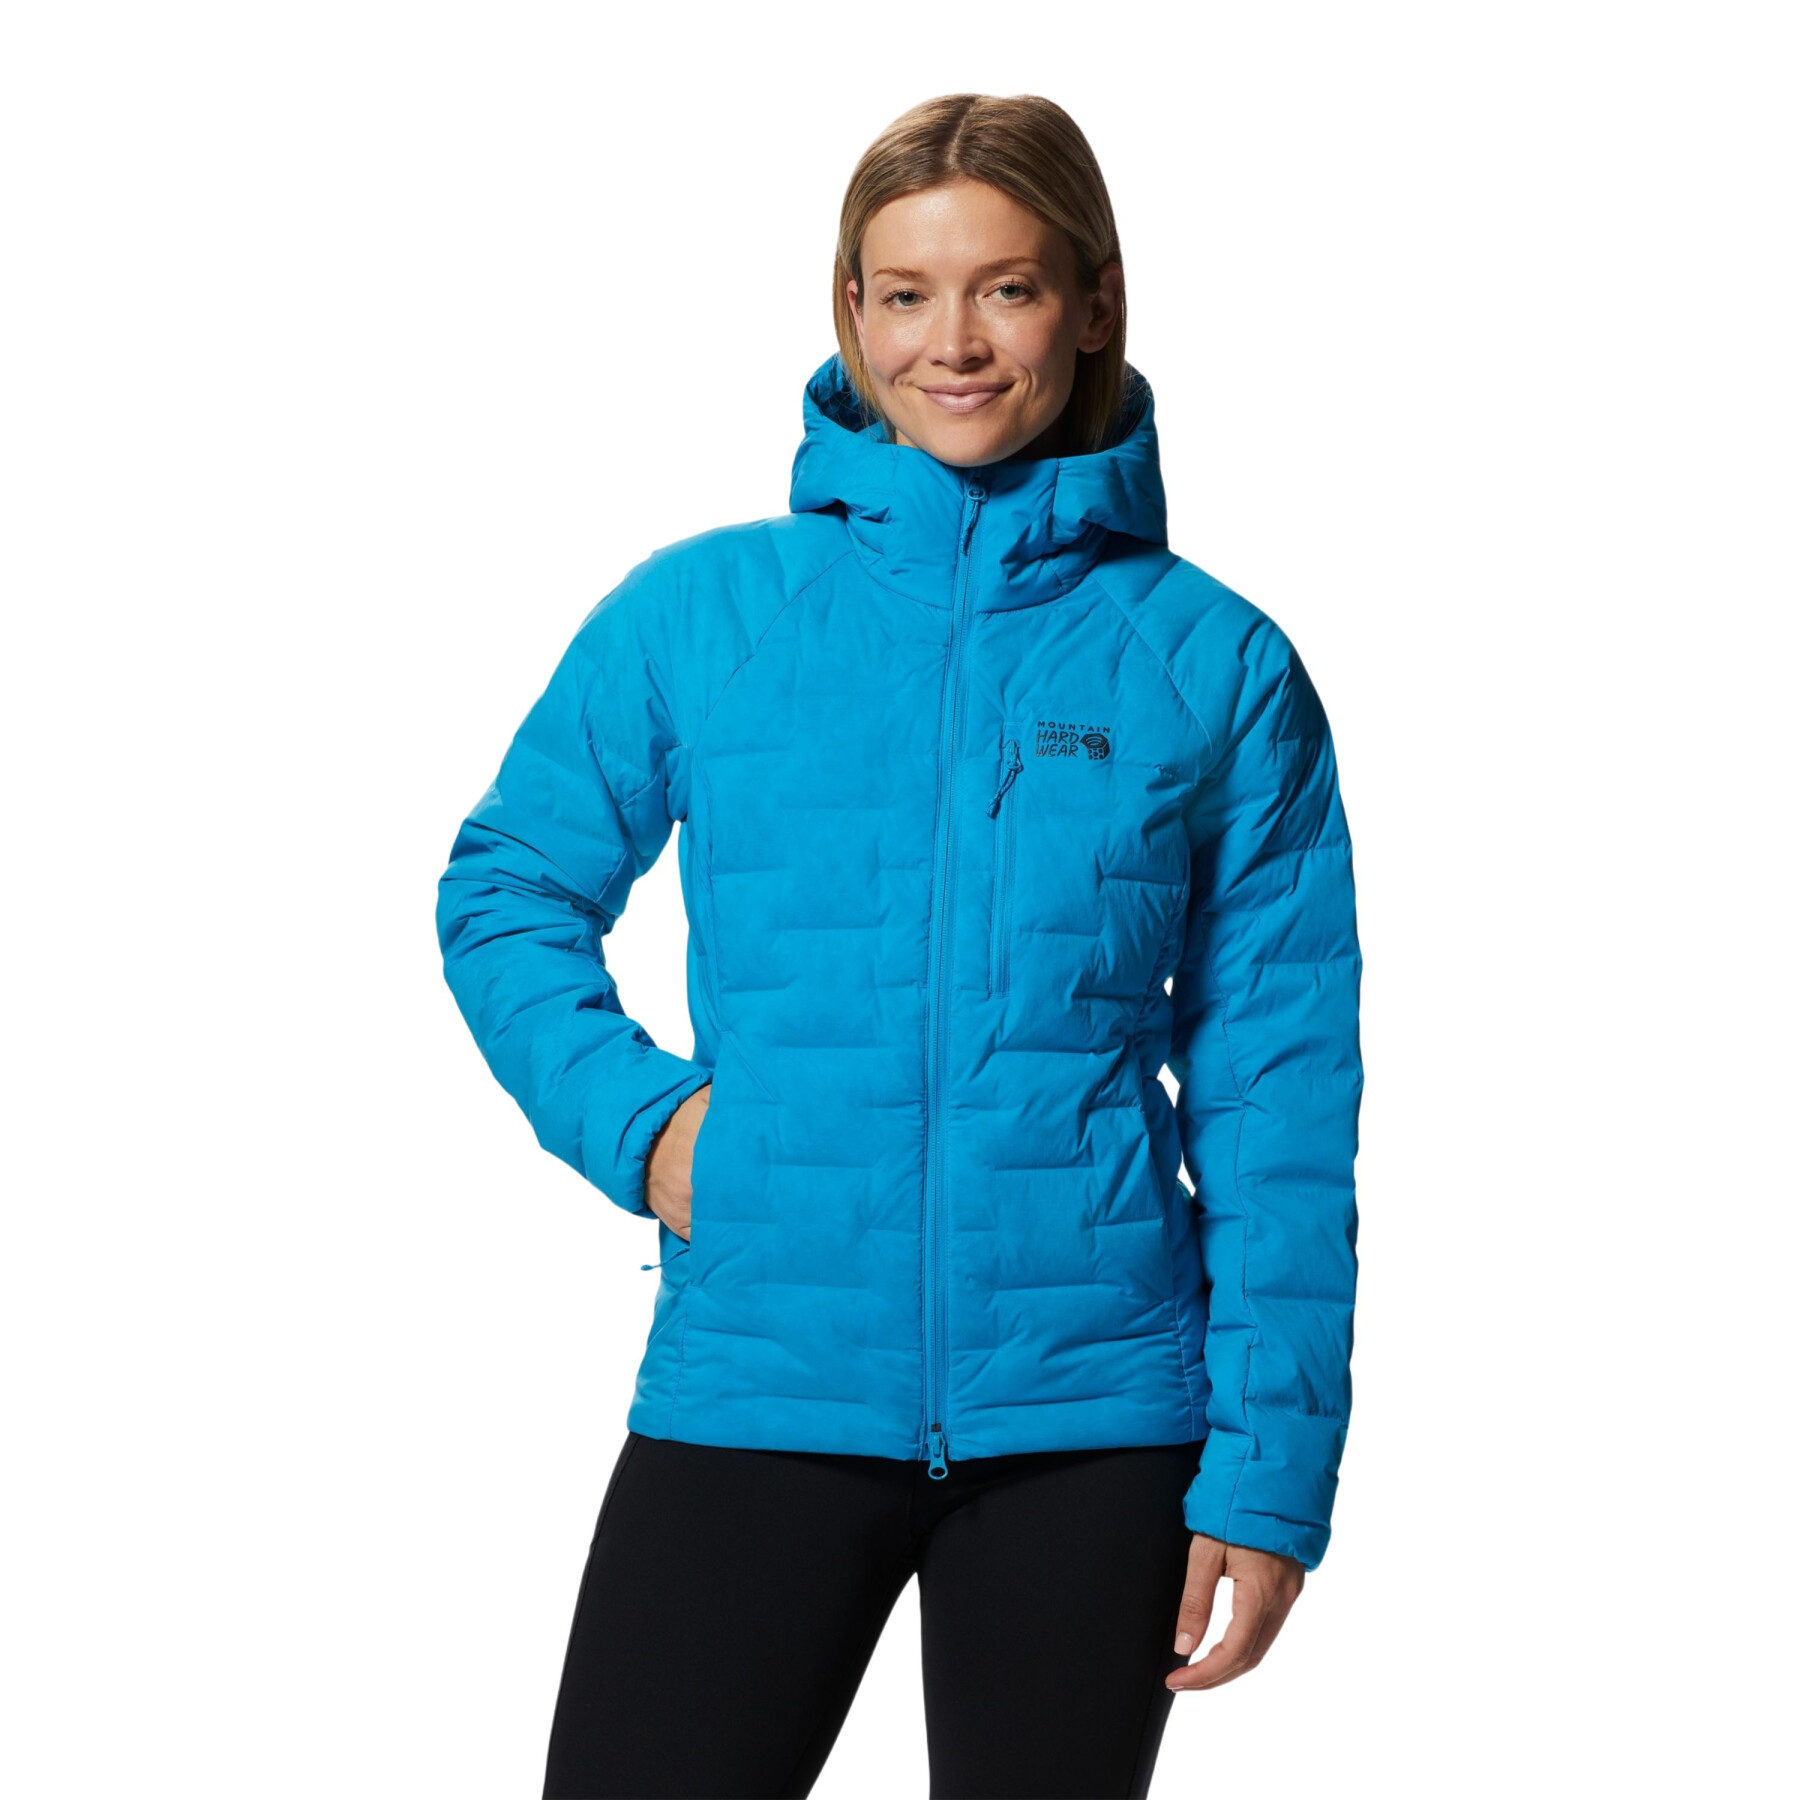 Women's hooded jacket Mountain Hardwear Stretchdown